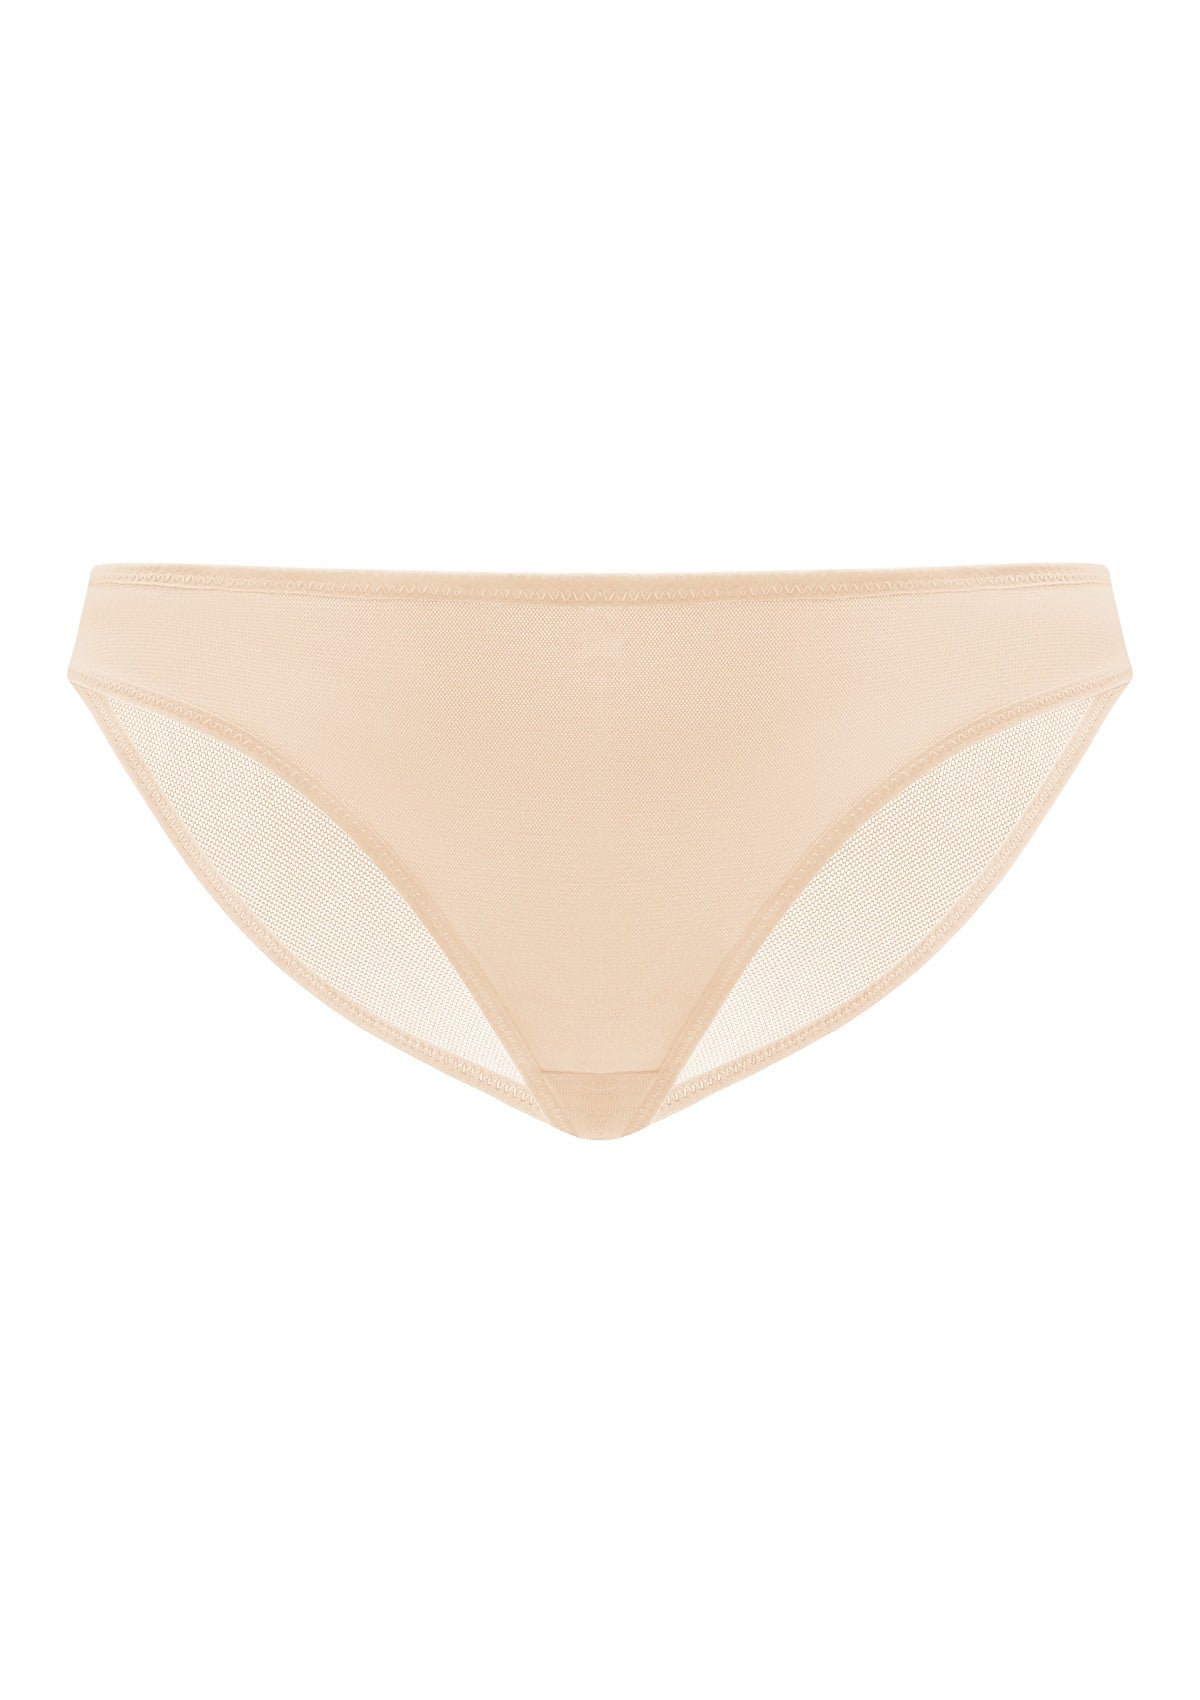 HSIA Billie Smooth Sheer Mesh Lightweight Soft Comfy Bikini Underwear - M / Black